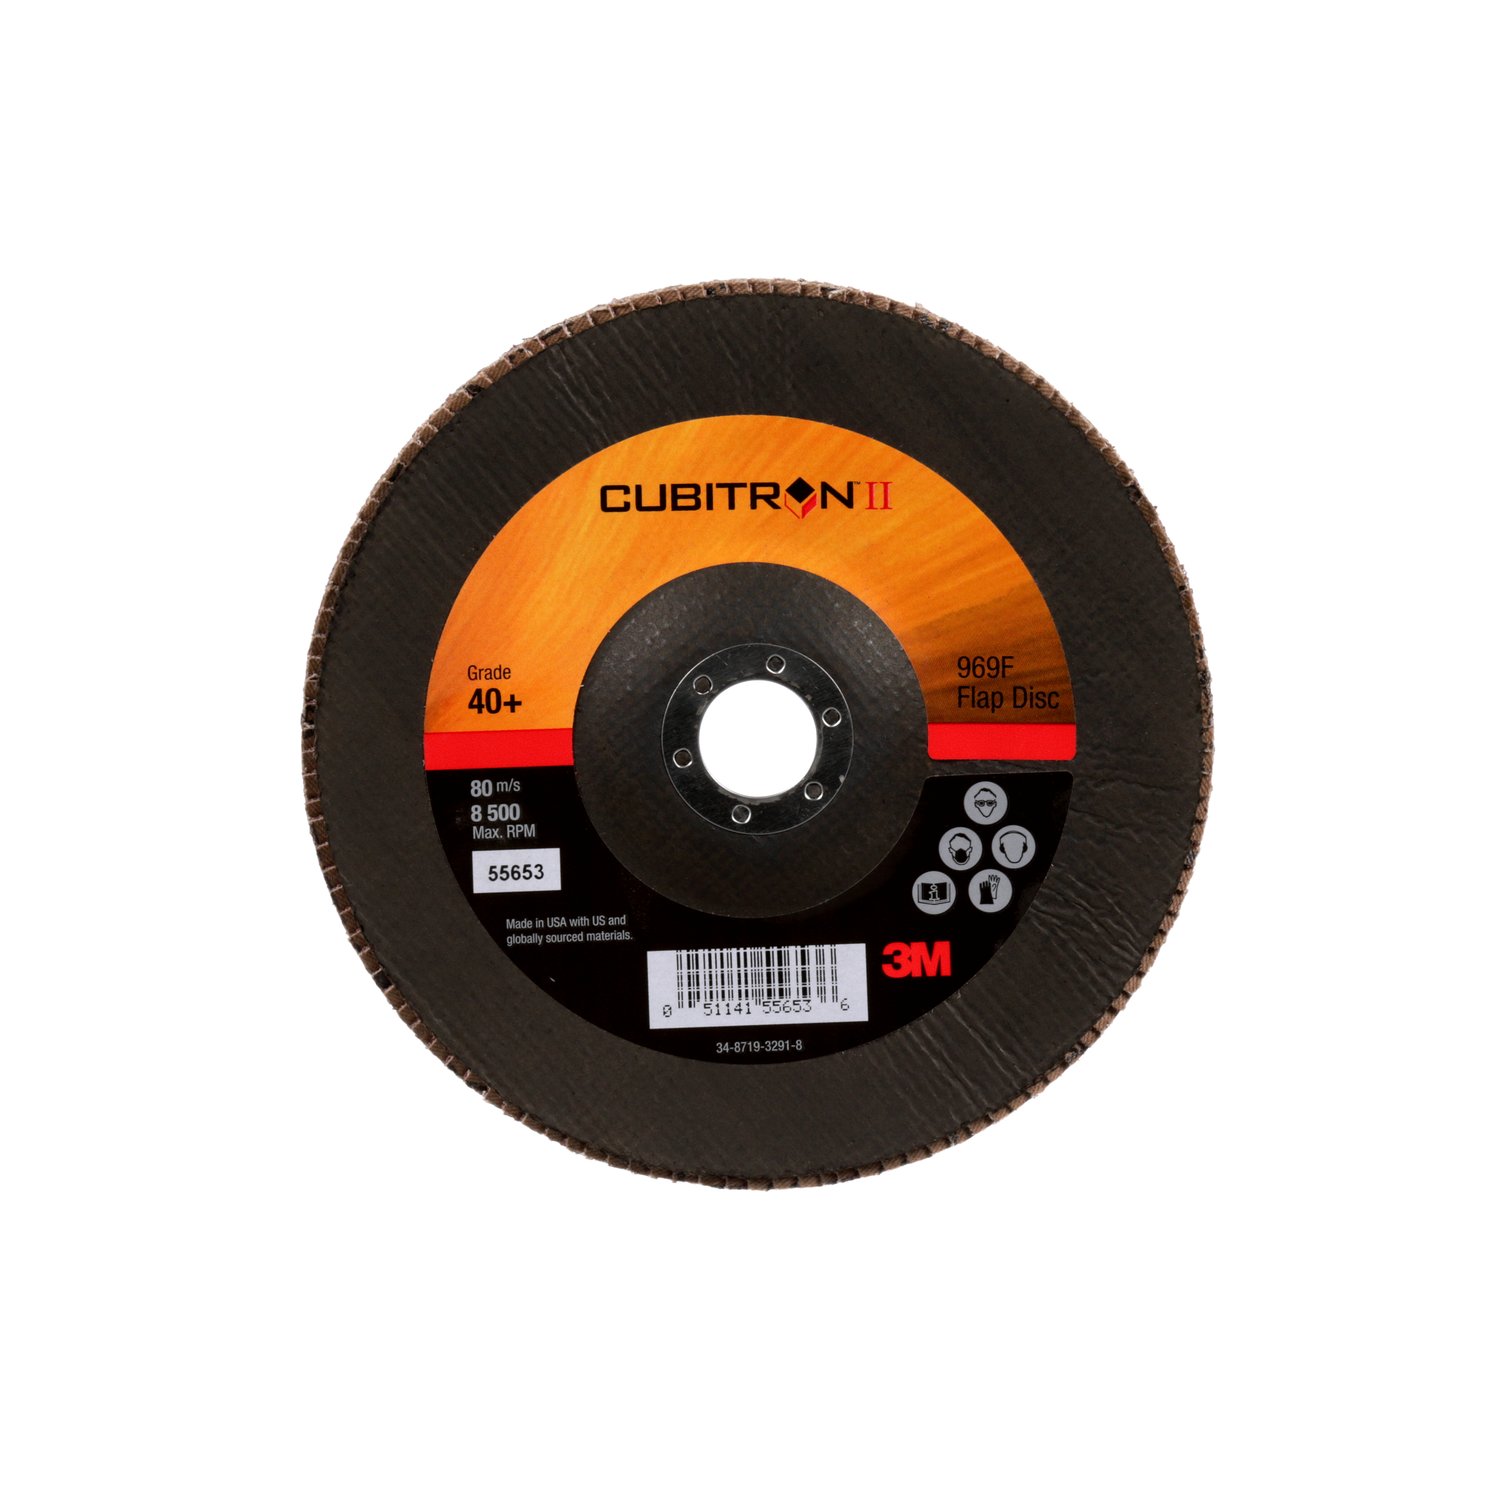 7100052279 - 3M Cubitron II Flap Disc 967A, 40+, T29, 7 in x 7/8 in, Giant, 5
ea/Case